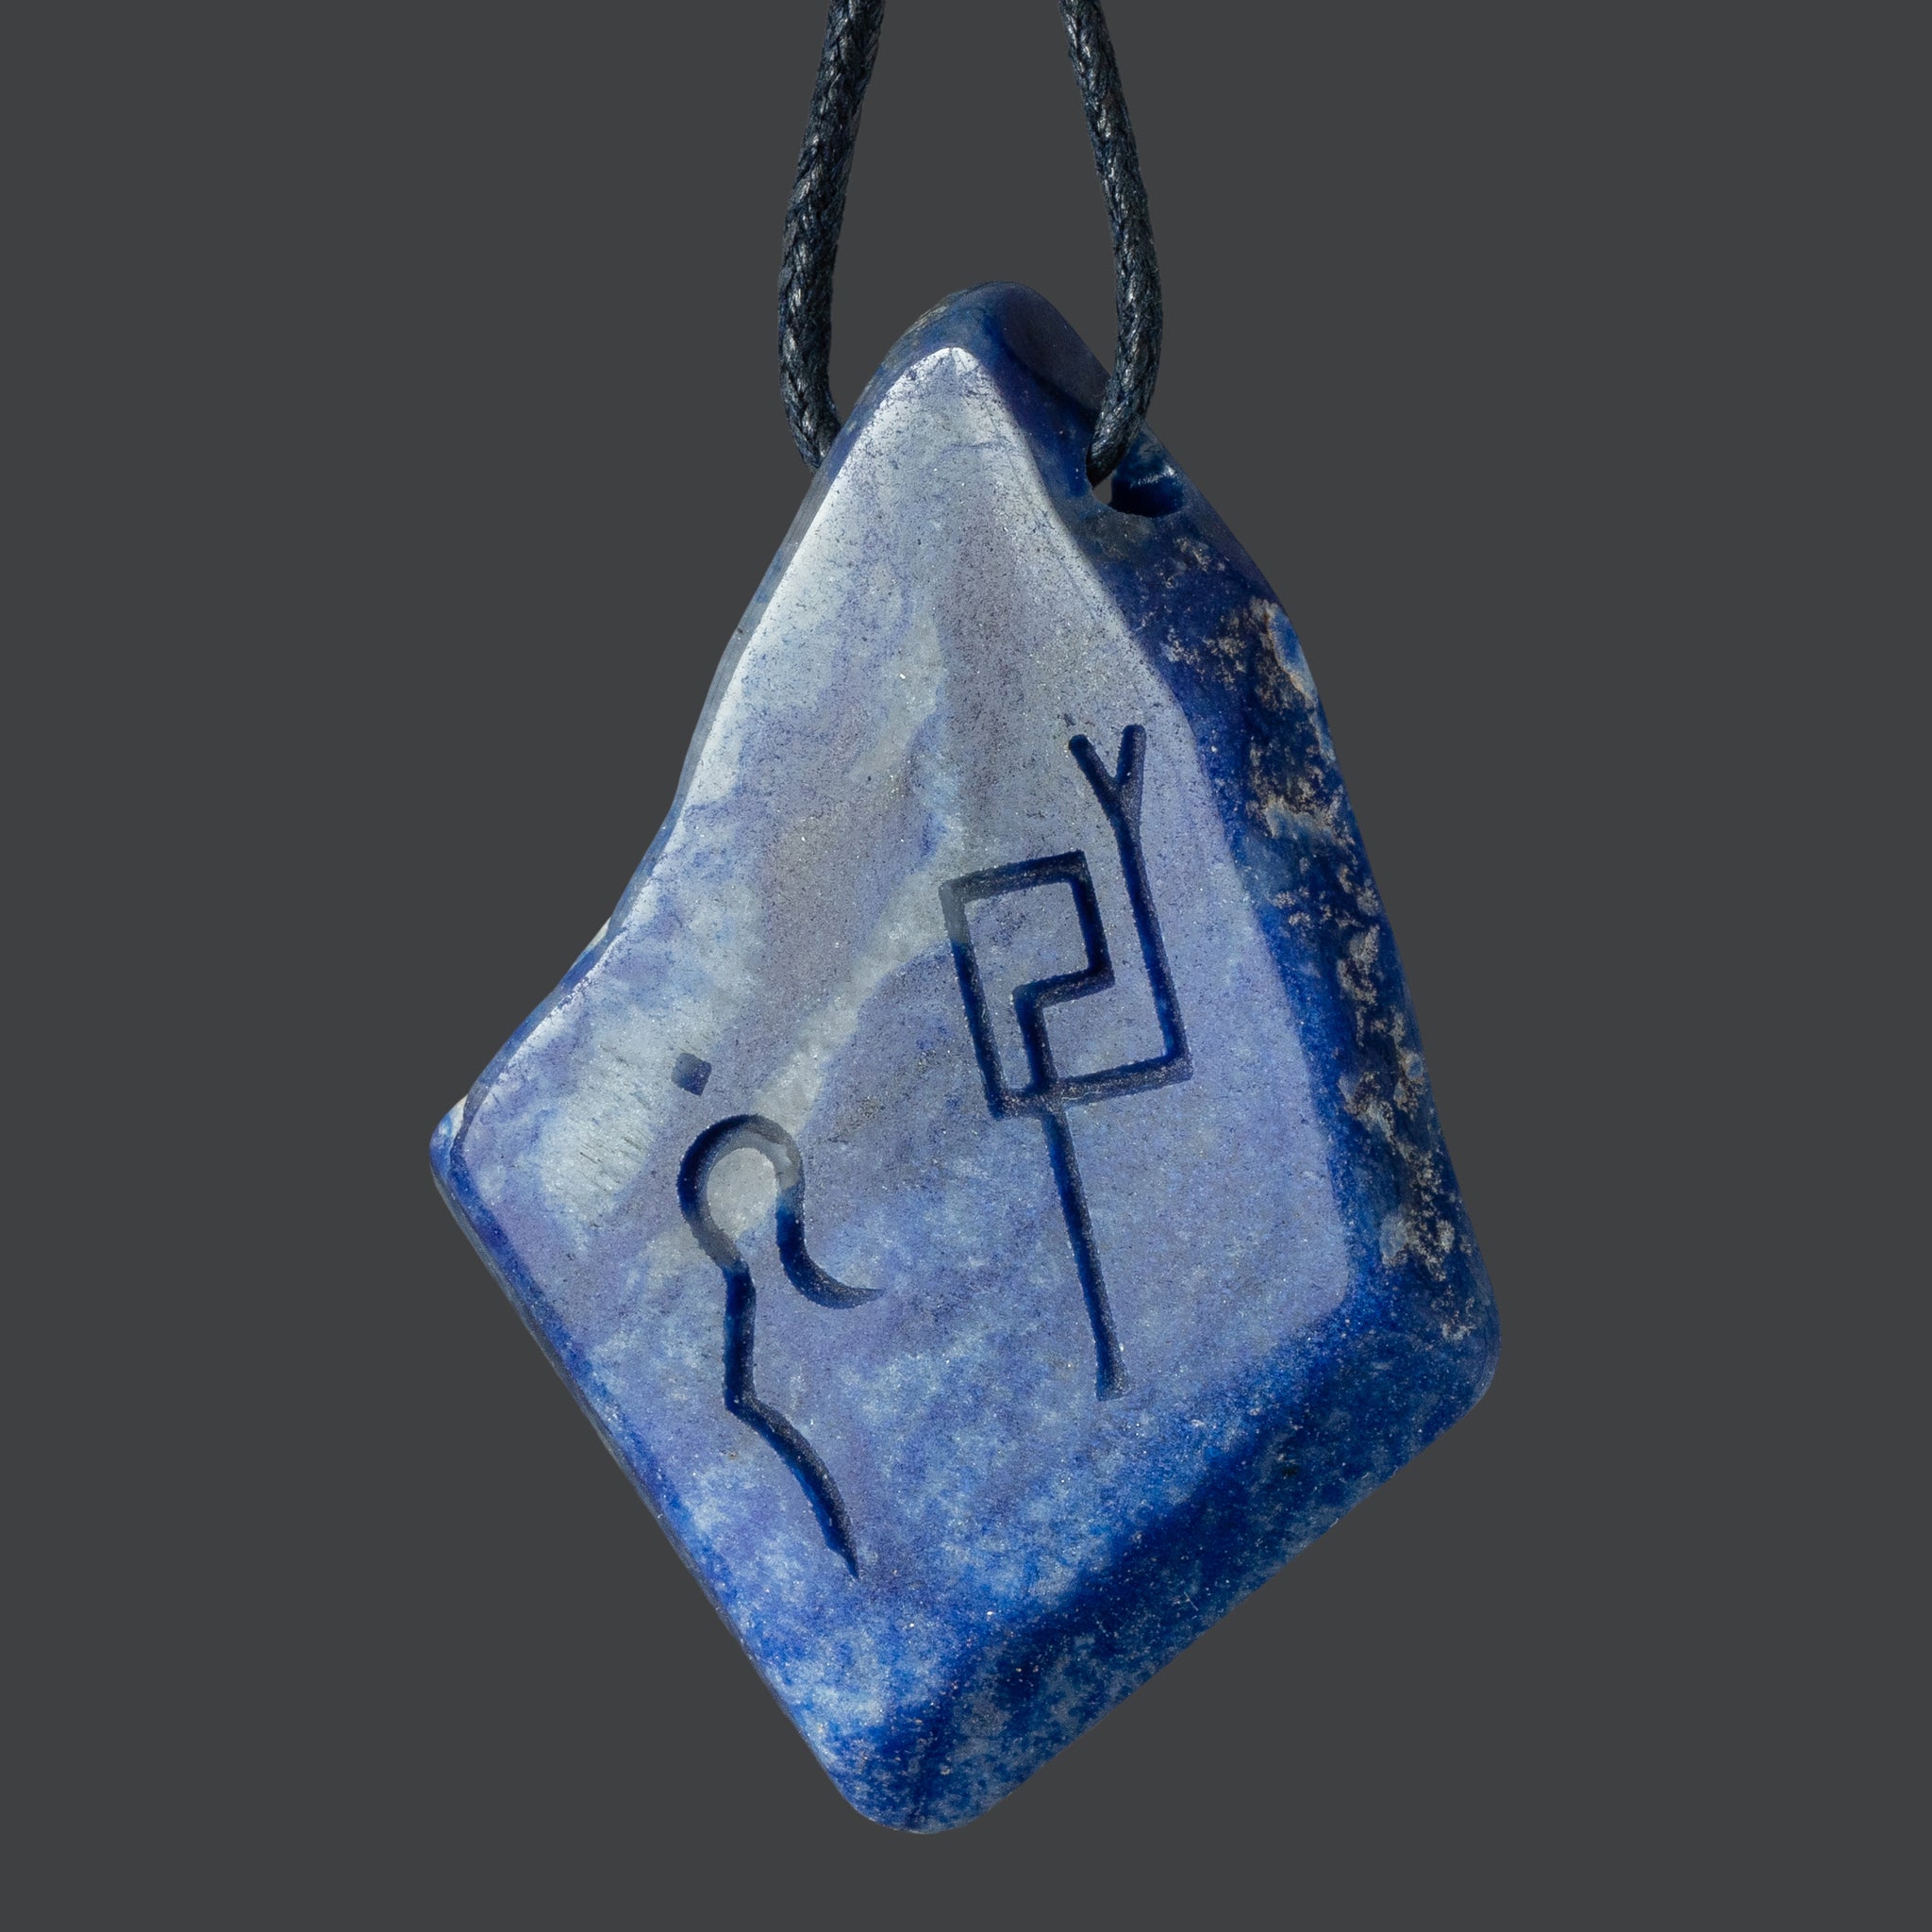 Blue Quartz Pendant with Divine Feminine & Sacred Masculine Symbols